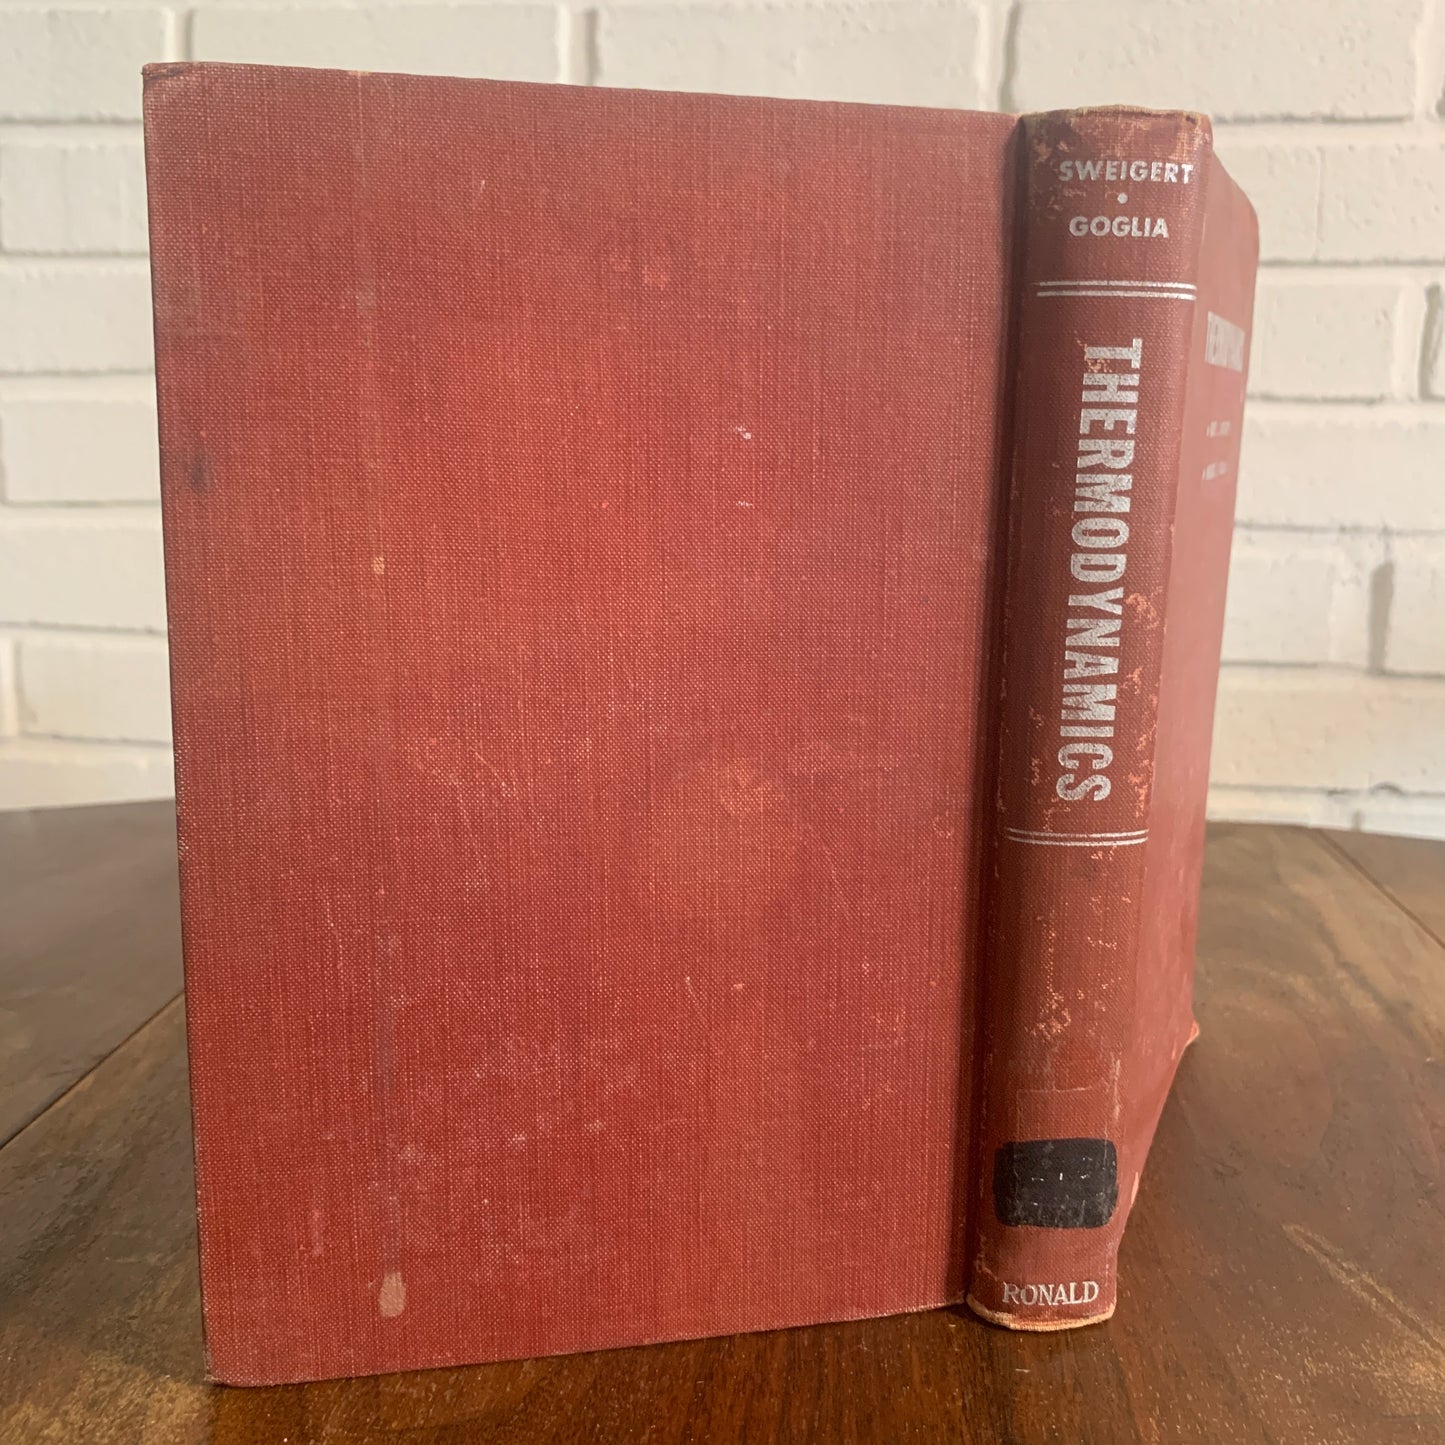 Thermodynamics by Sweigert & Goglia 1955 Hardcover